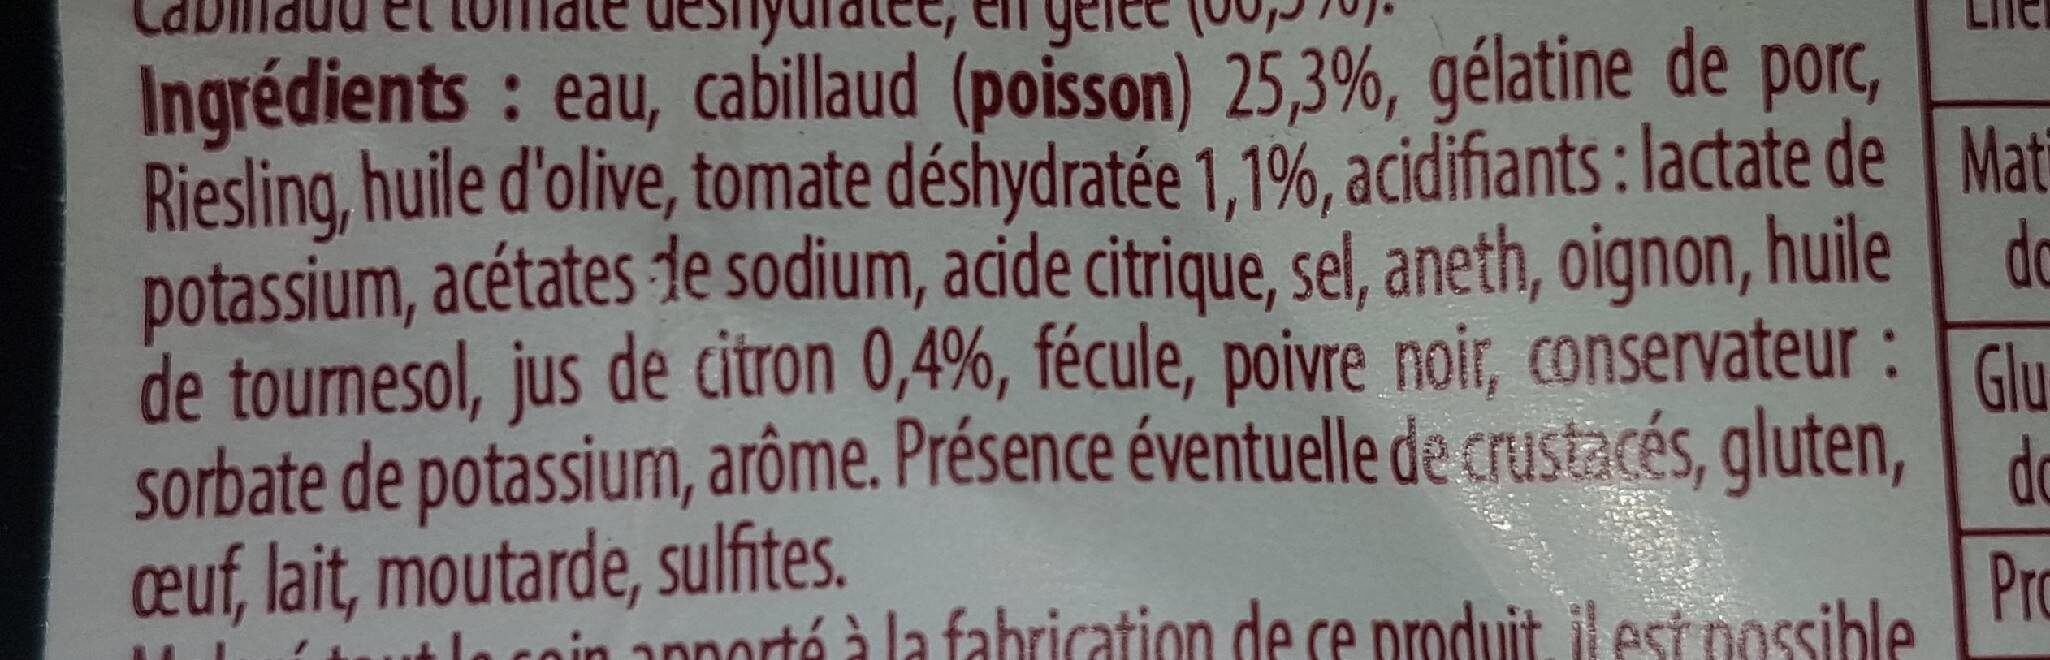 Cabillaud citronné - Ingrédients